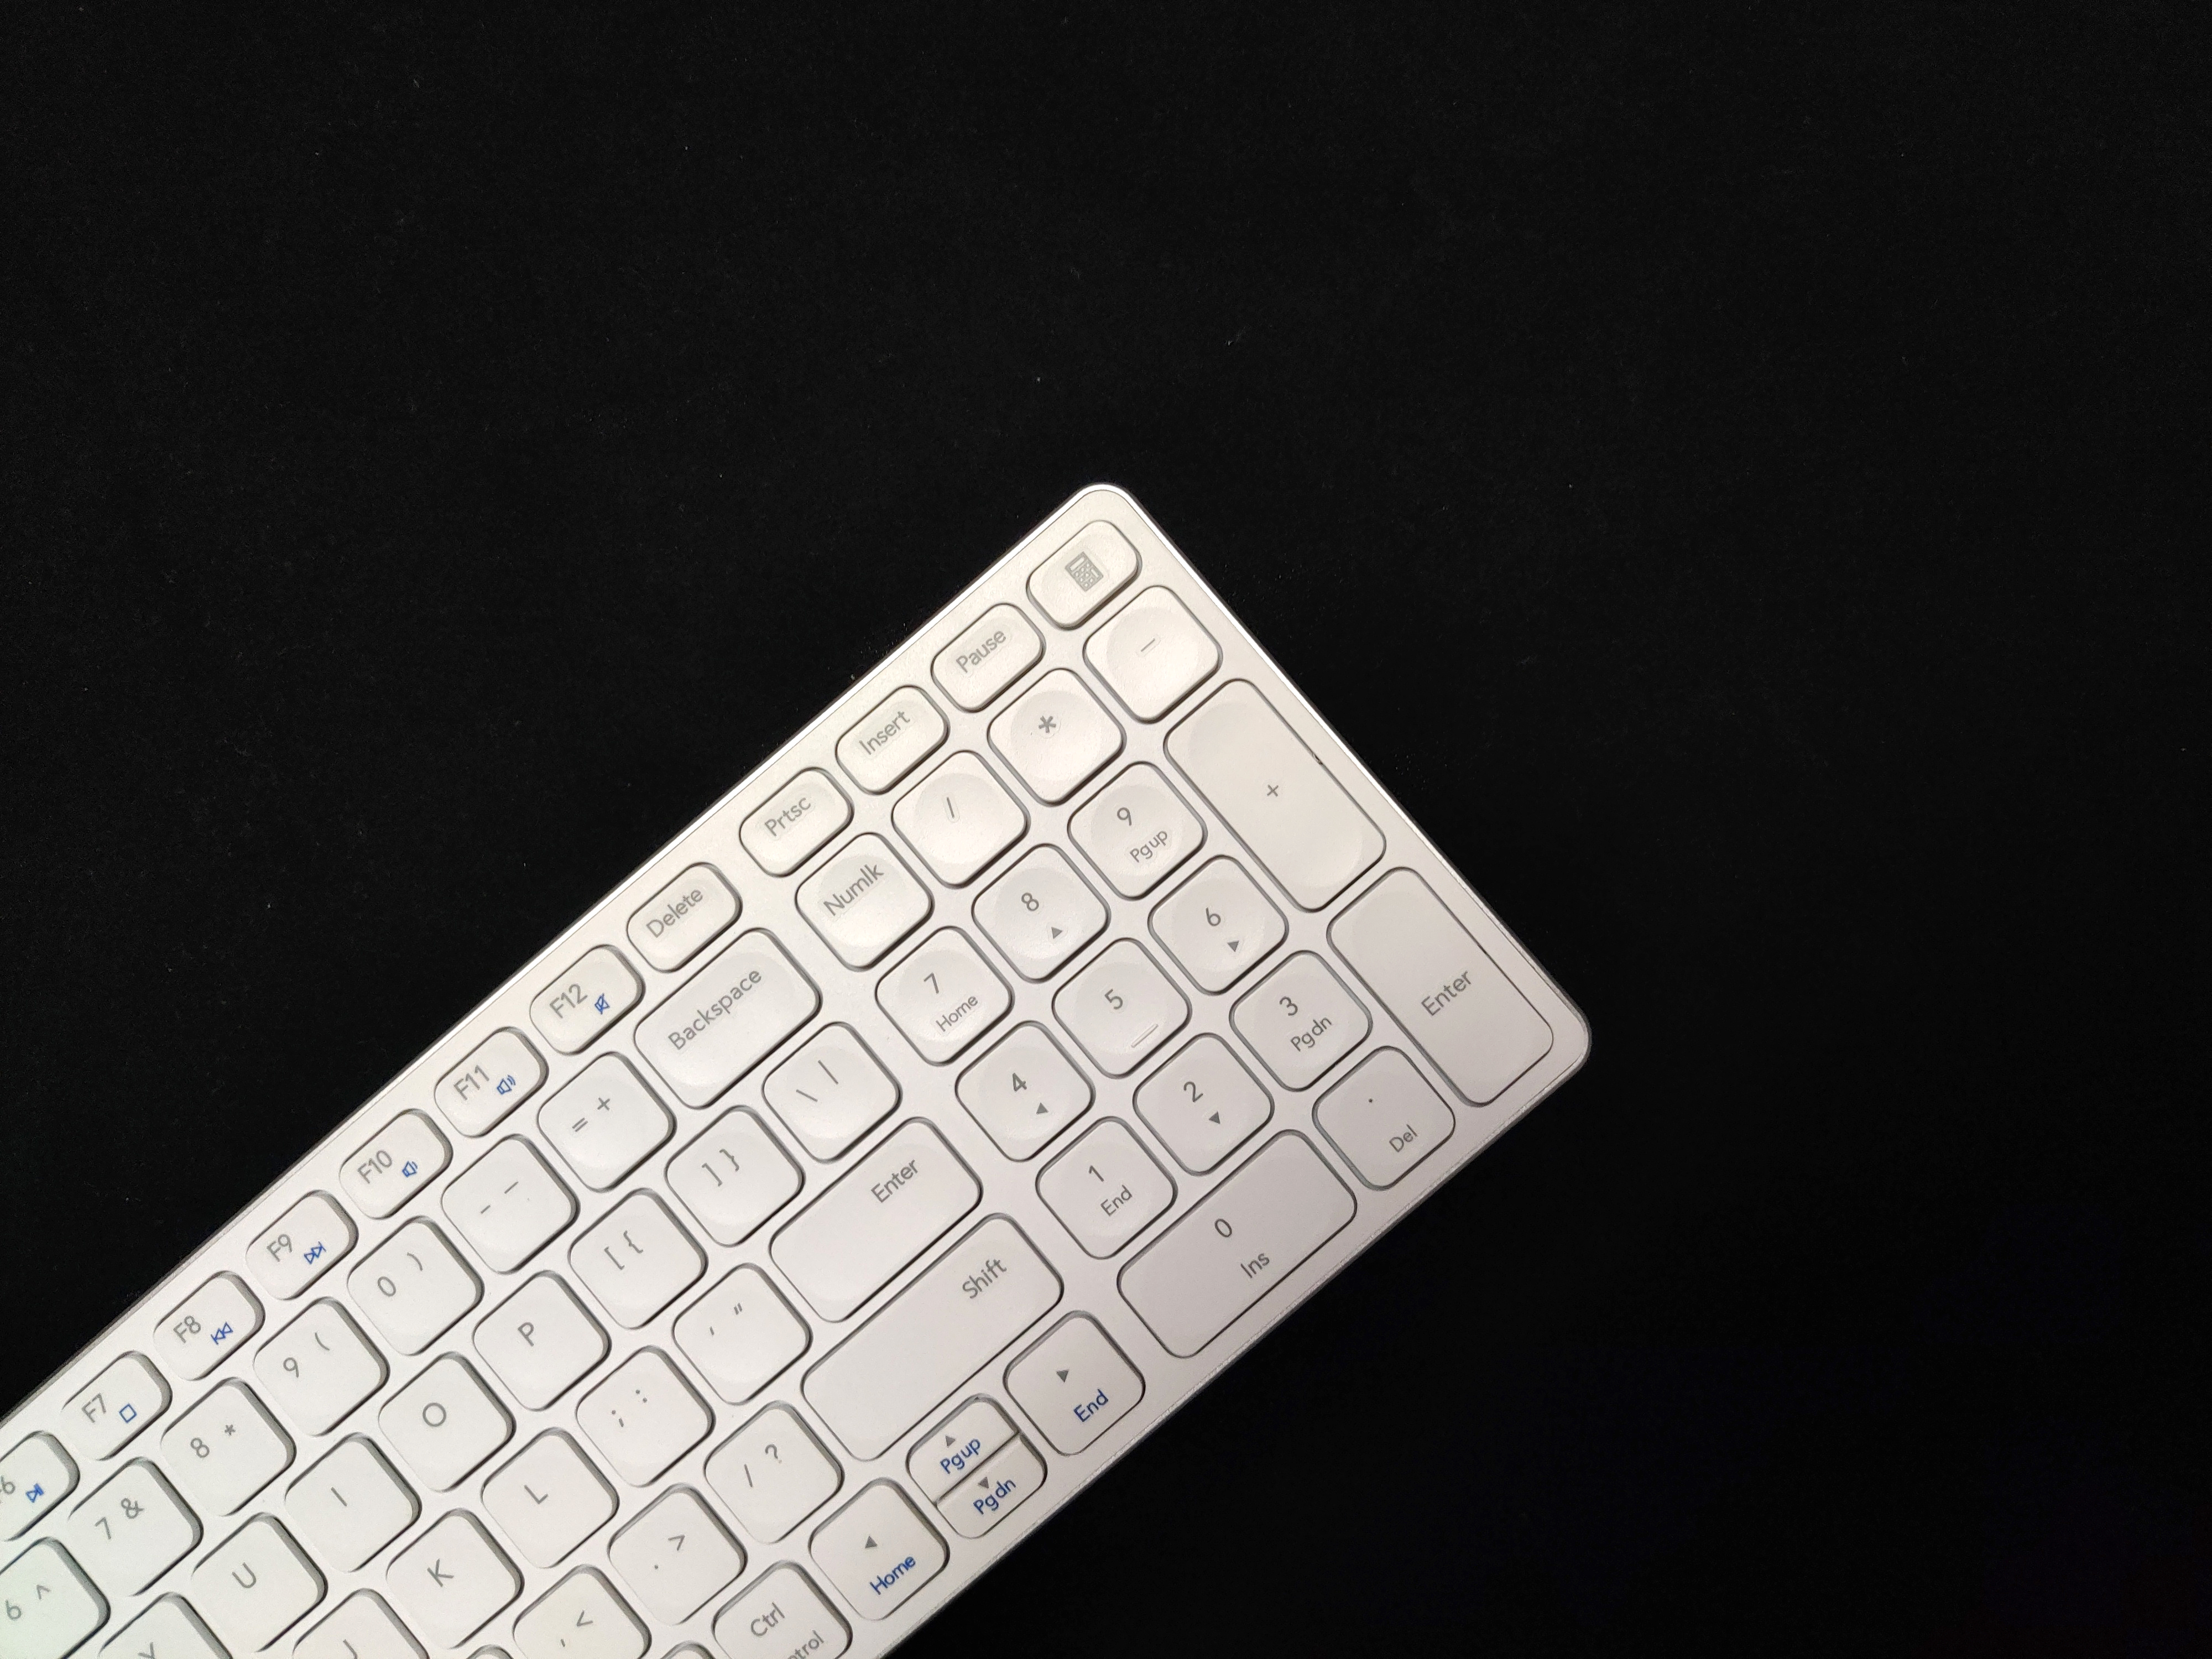 键盘|始于颜值、陷于手感、终于功能——雷柏E9350G刀锋键盘使用体验